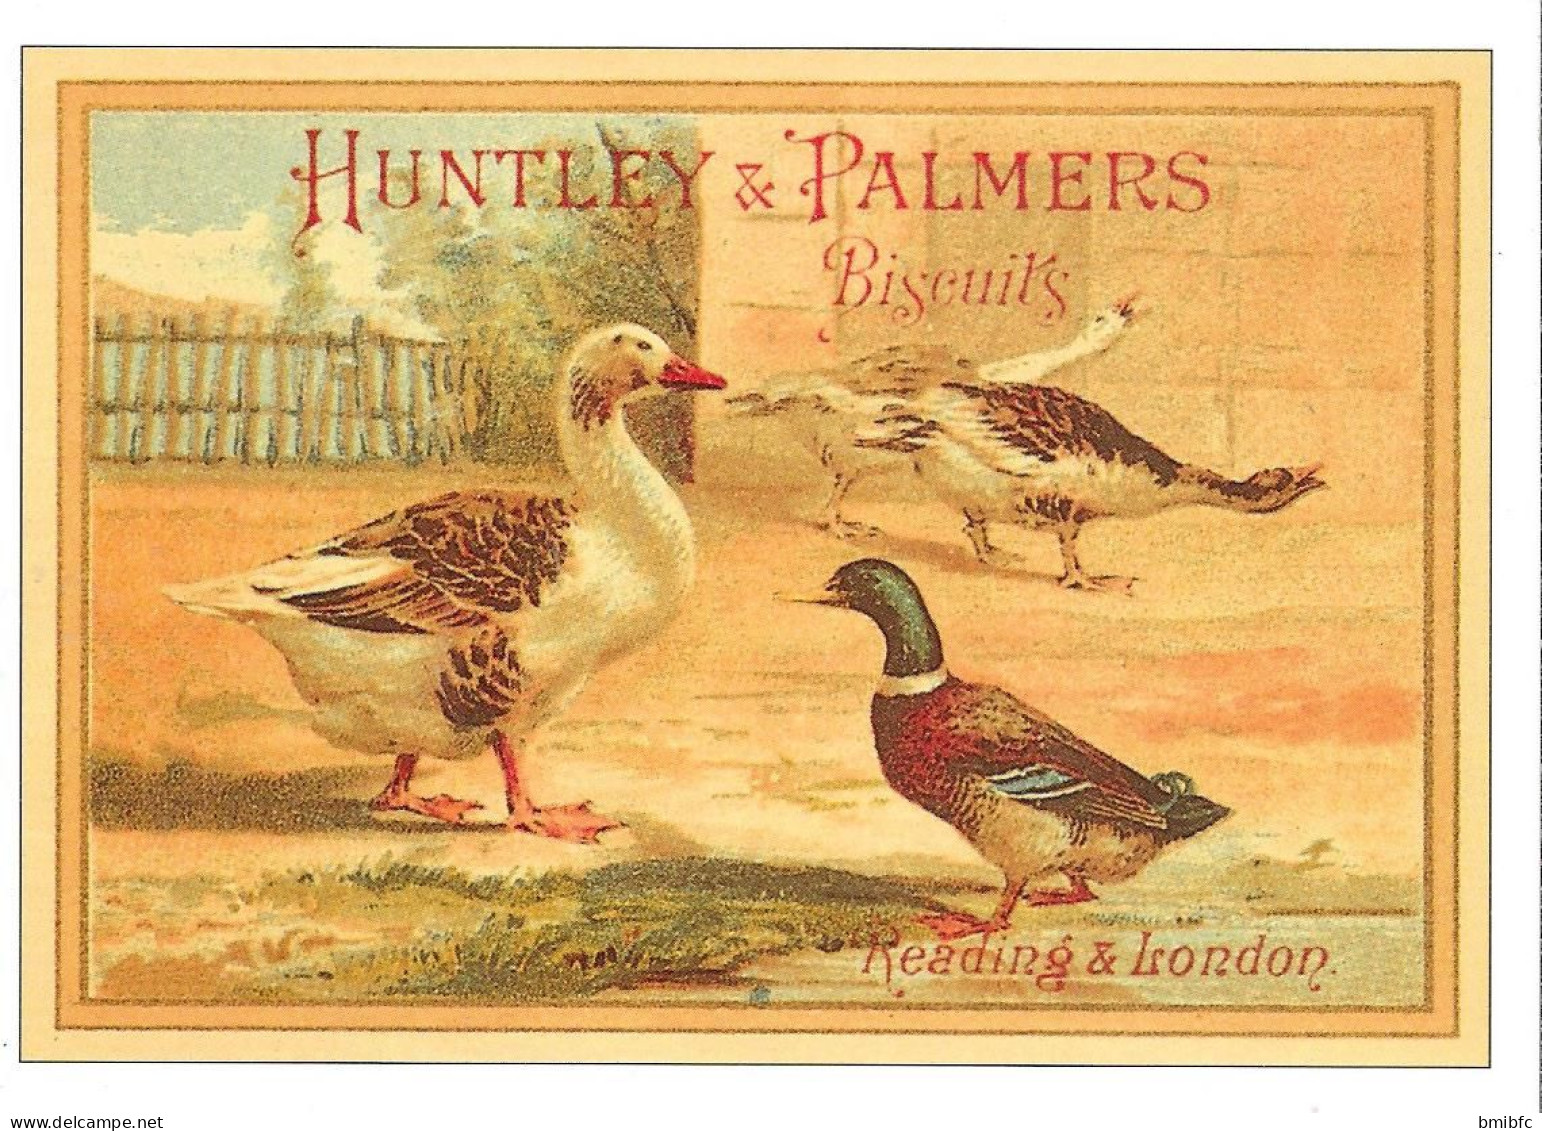 HUNTLEY & PALMERS - Biscuits - Reading & London - Publicité